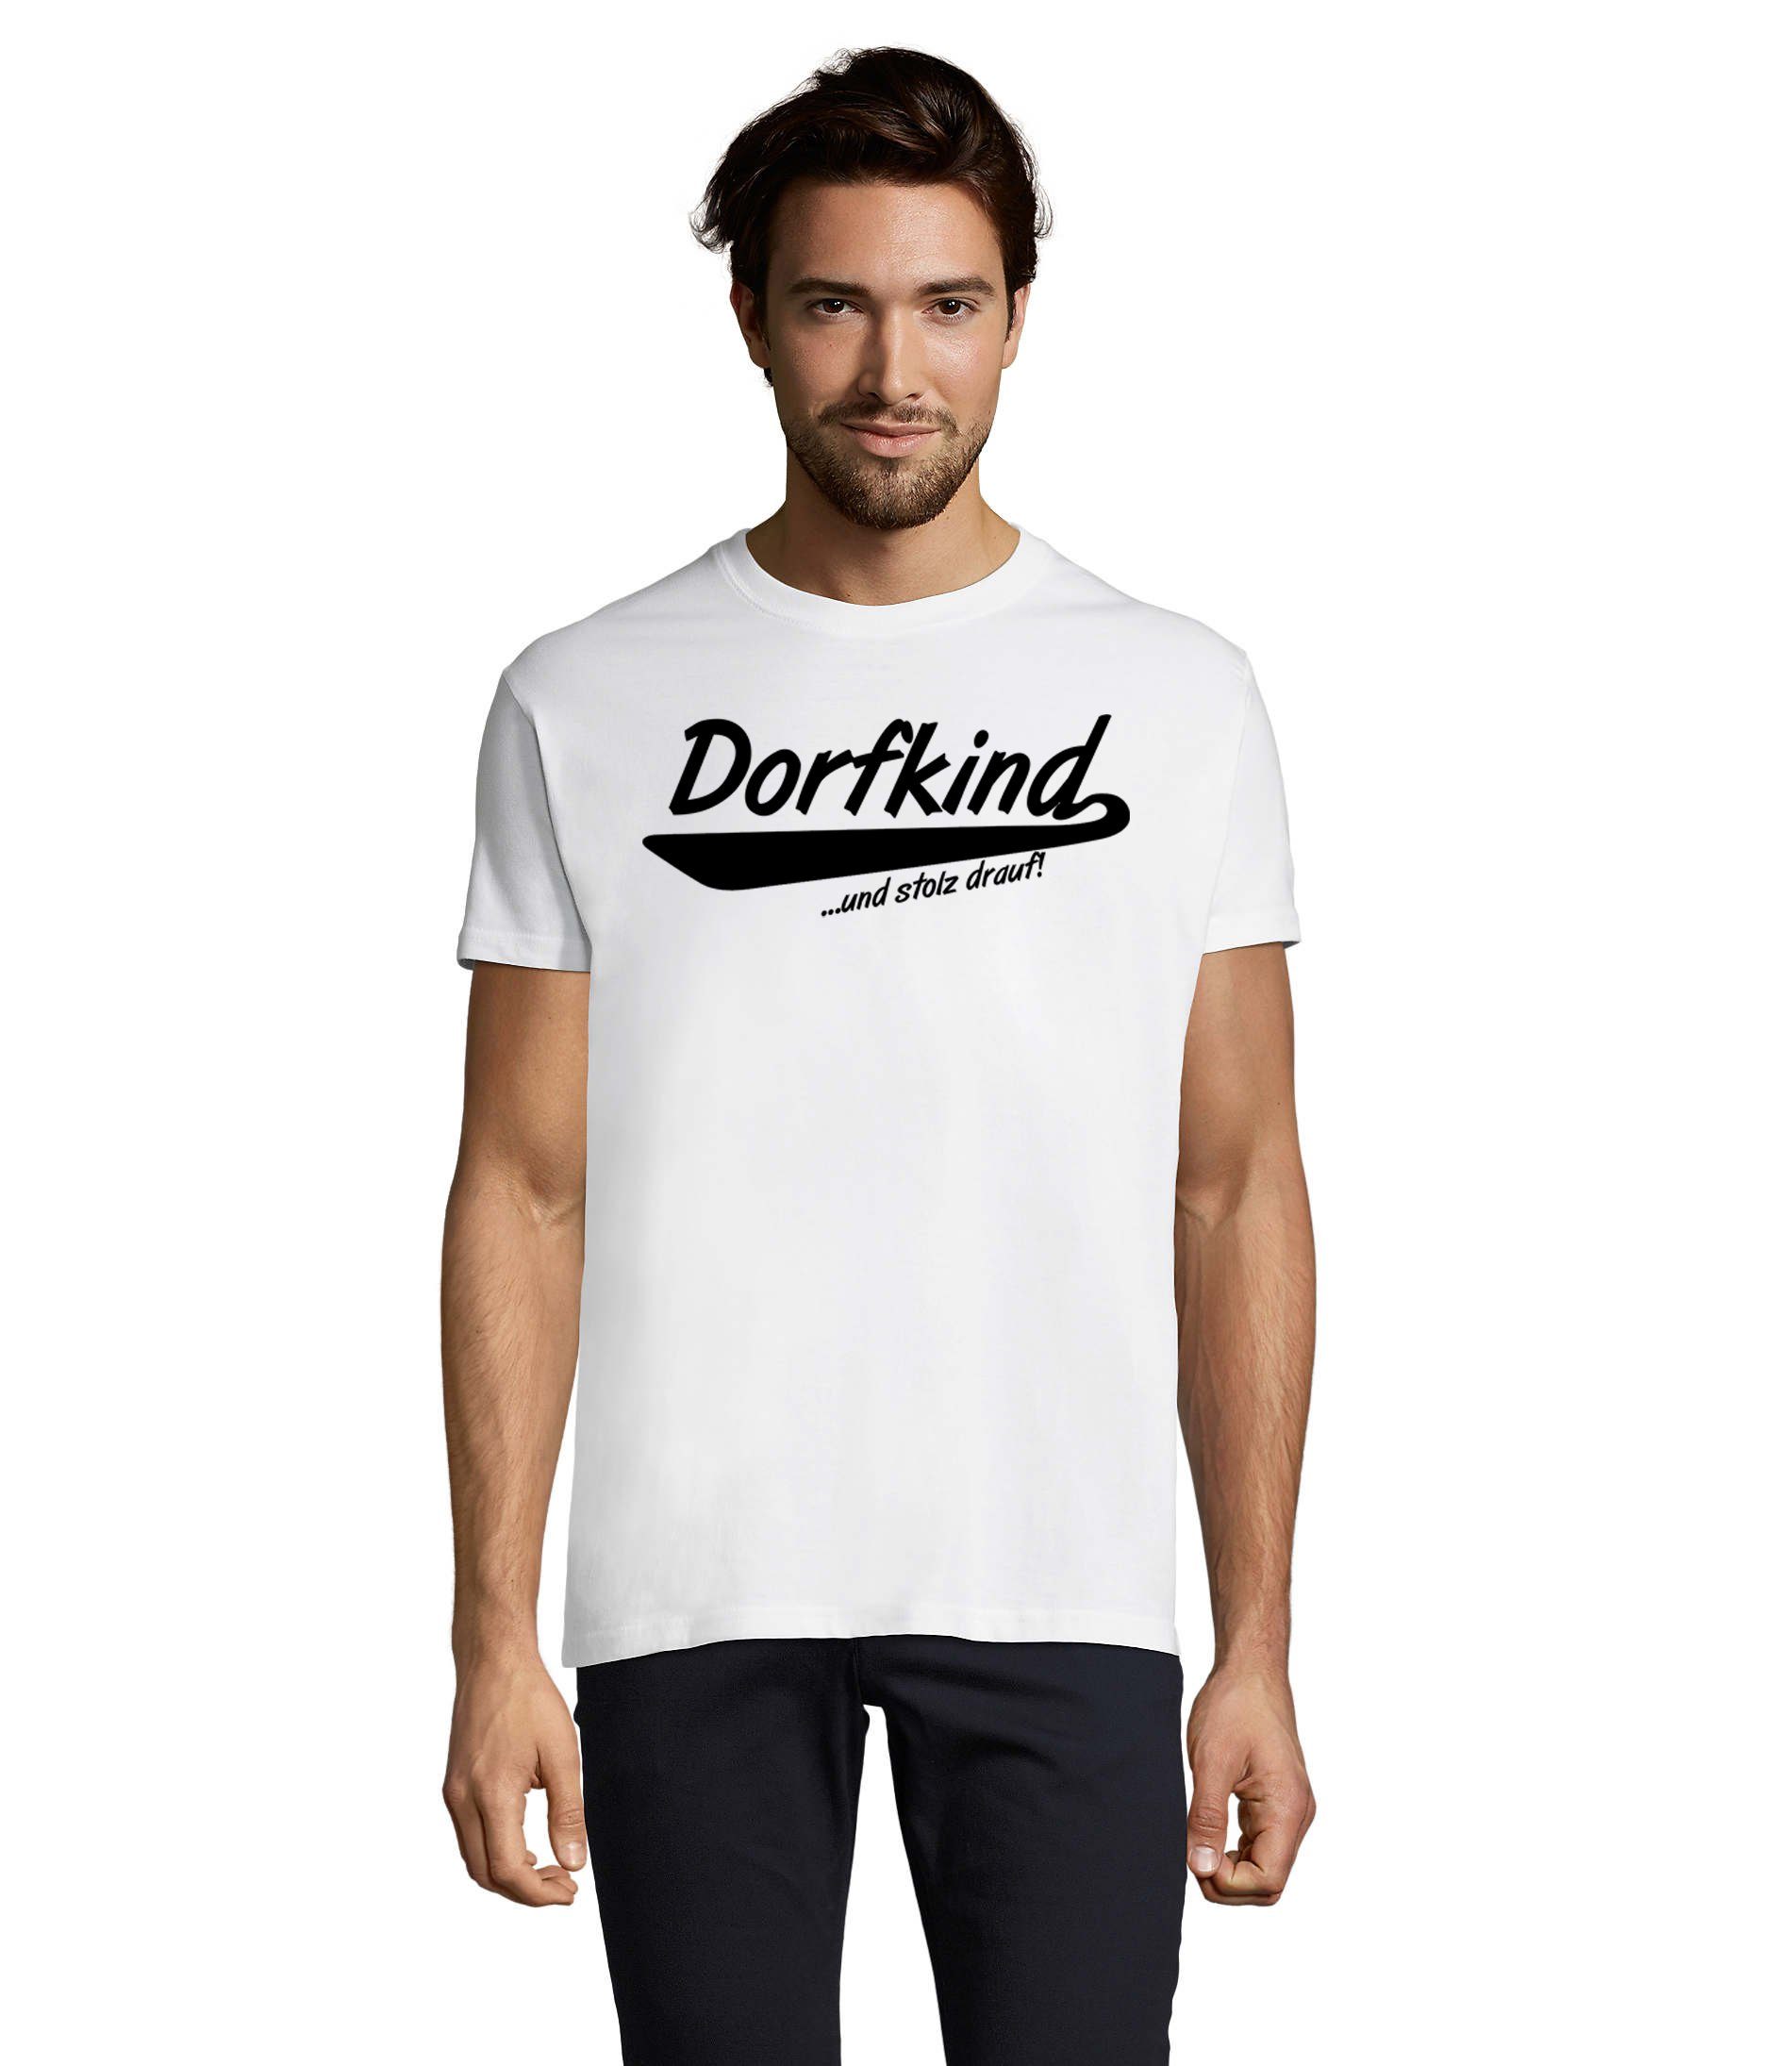 Blondie & Brownie T-Shirt Herren Dorfkind und stolz drauf! Weiss | T-Shirts